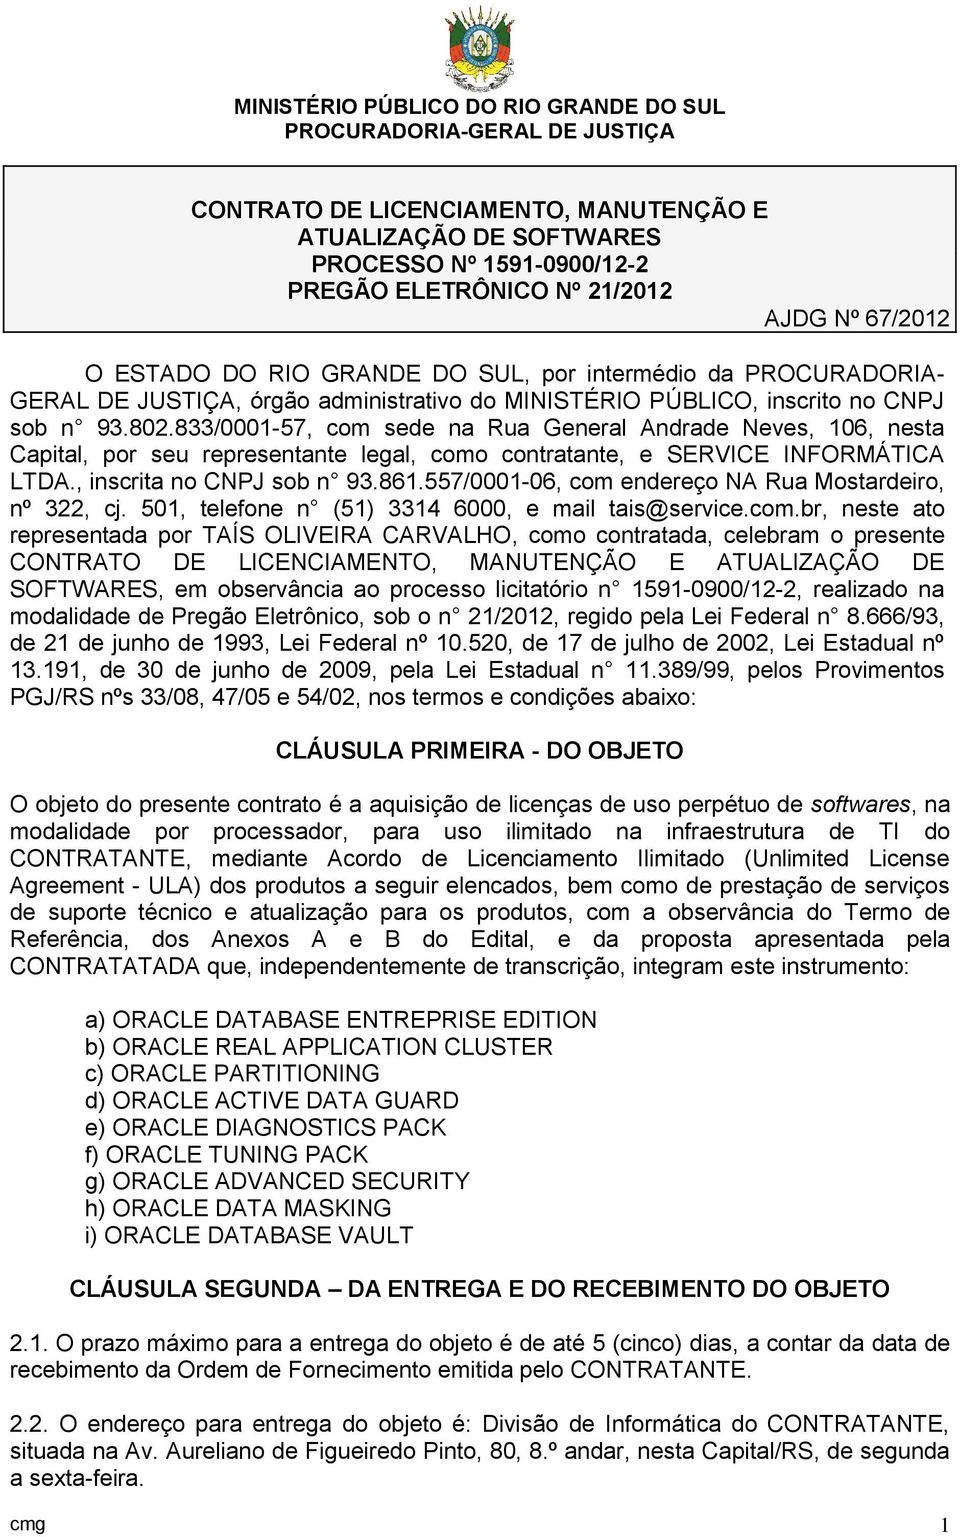 833/0001-57, com sede na Rua General Andrade Neves, 106, nesta Capital, por seu representante legal, como contratante, e SERVICE INFORMÁTICA LTDA., inscrita no CNPJ sob n 93.861.